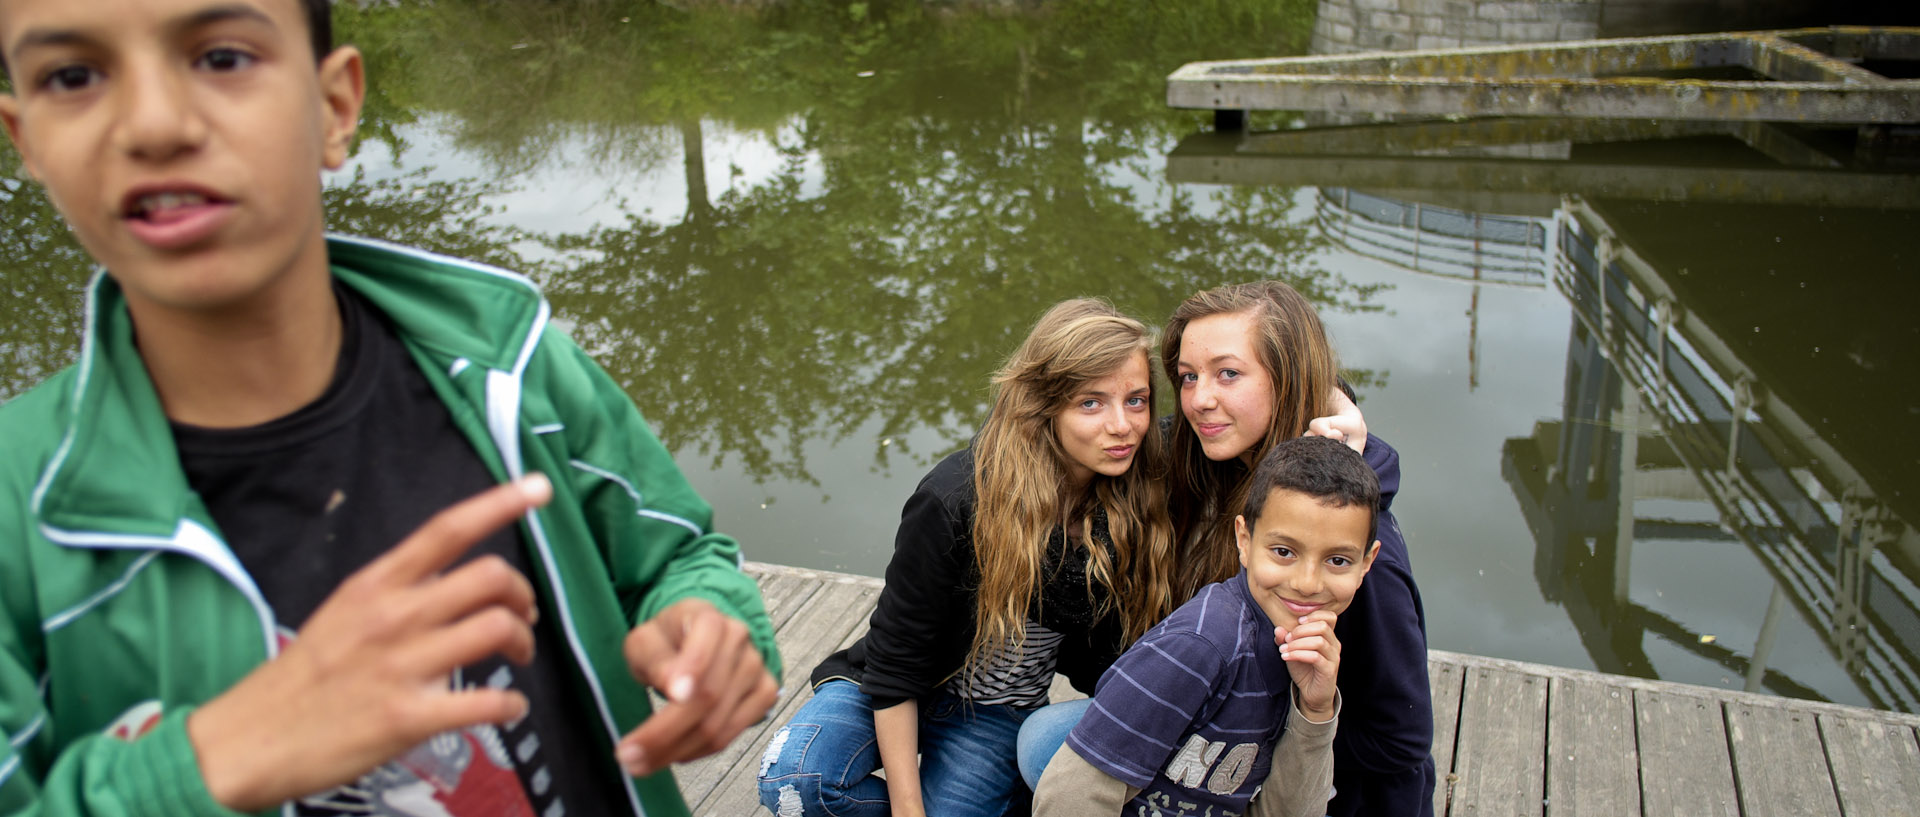 Jeunes sur une berge du canal de Roubaix.